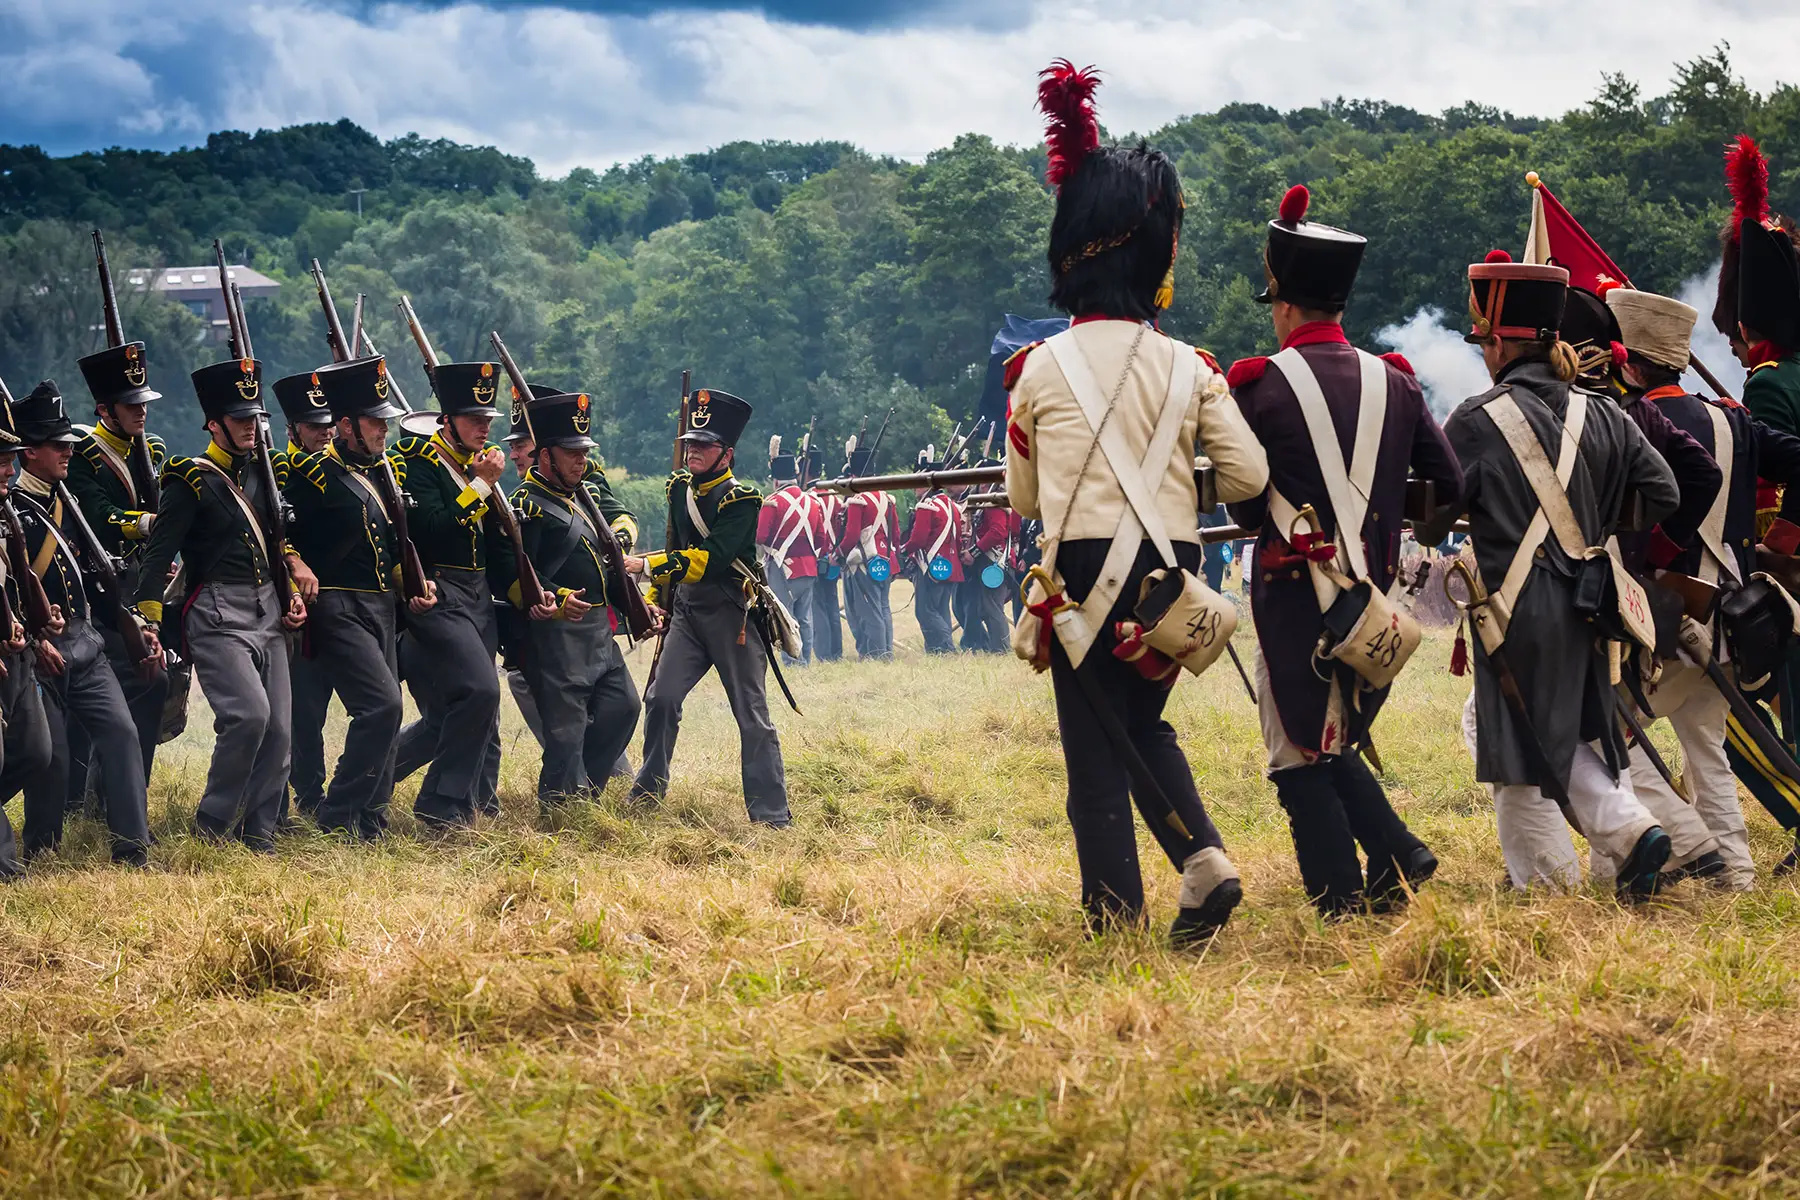 Re-enactors dressed as soldiers at a Battle of Waterloo reenactment